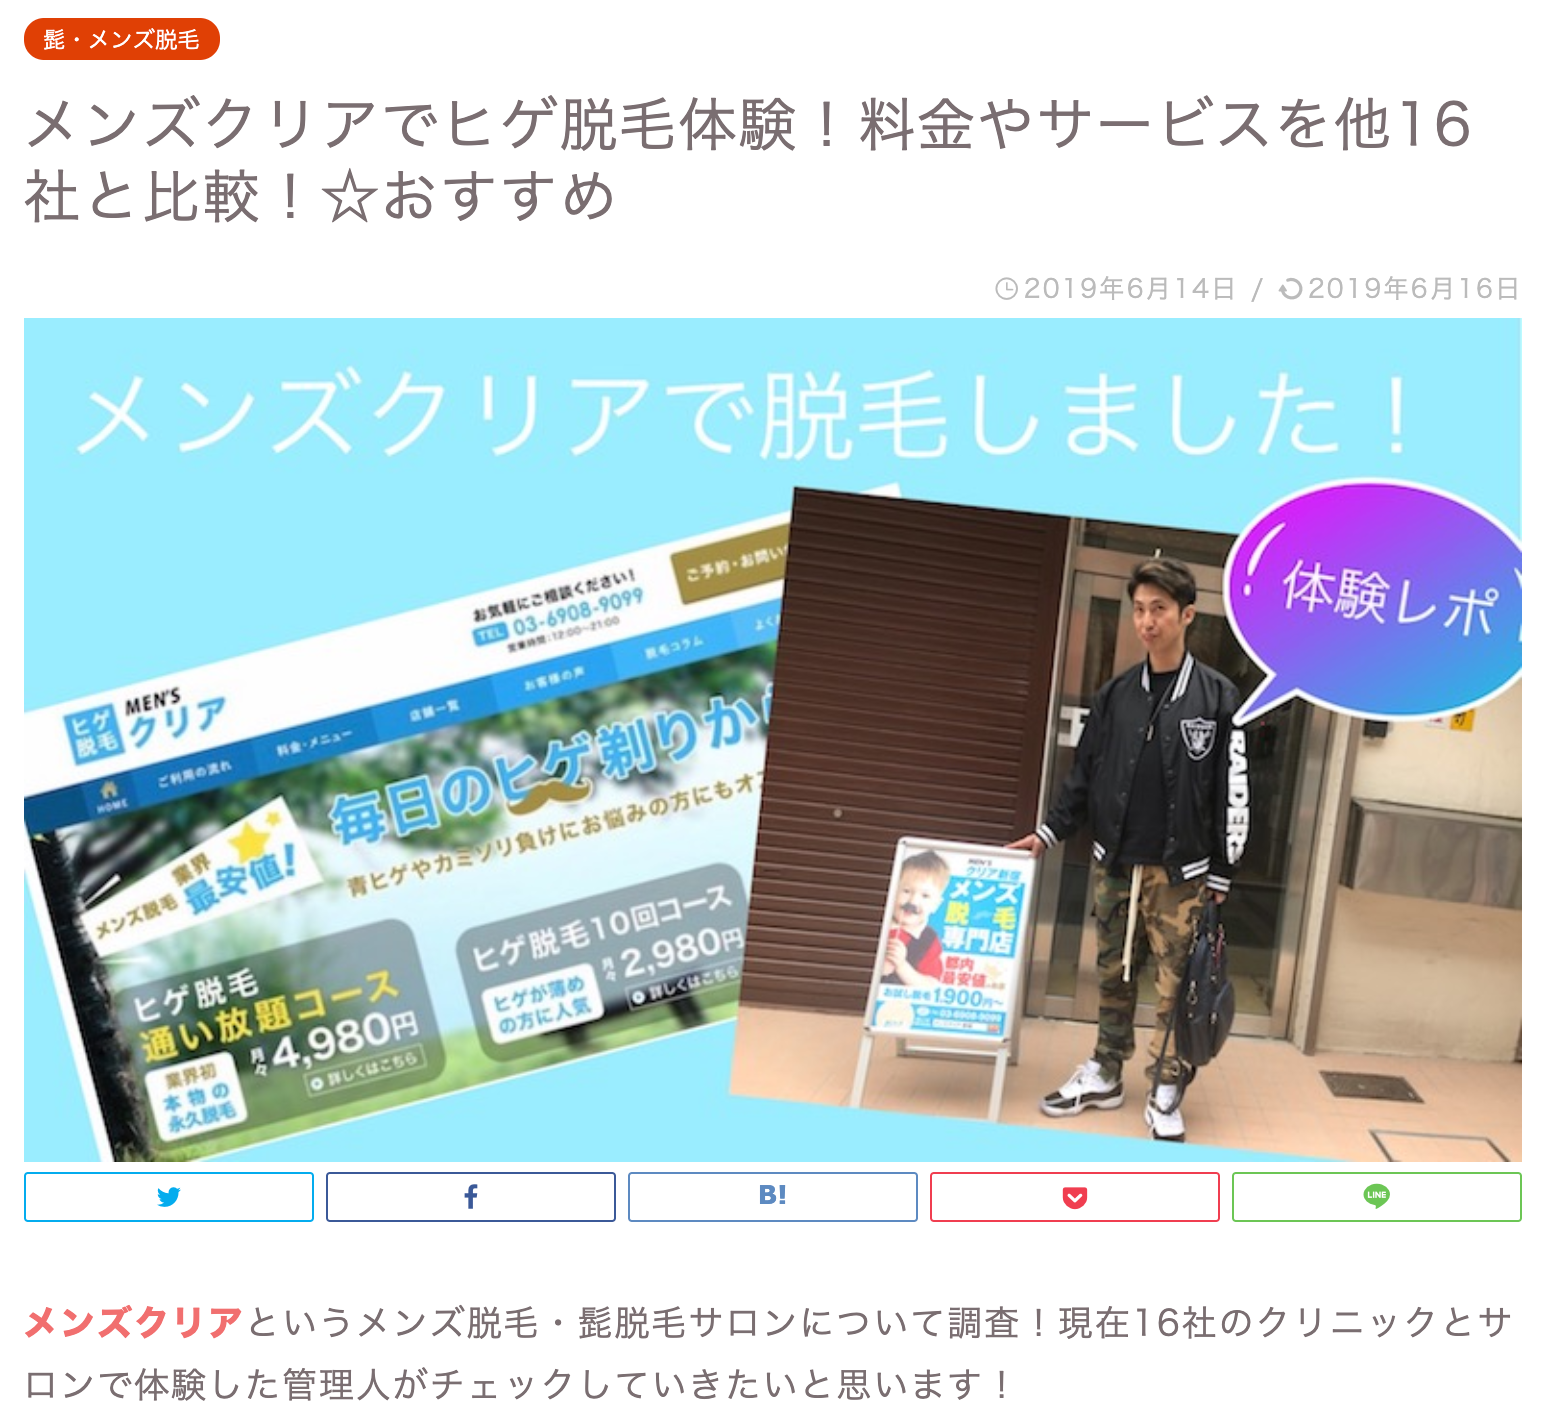 メンズ脱毛サロンのメンズクリア東京新宿店ではウェブメディア取材を歓迎しています 株式会社クリアのプレスリリース